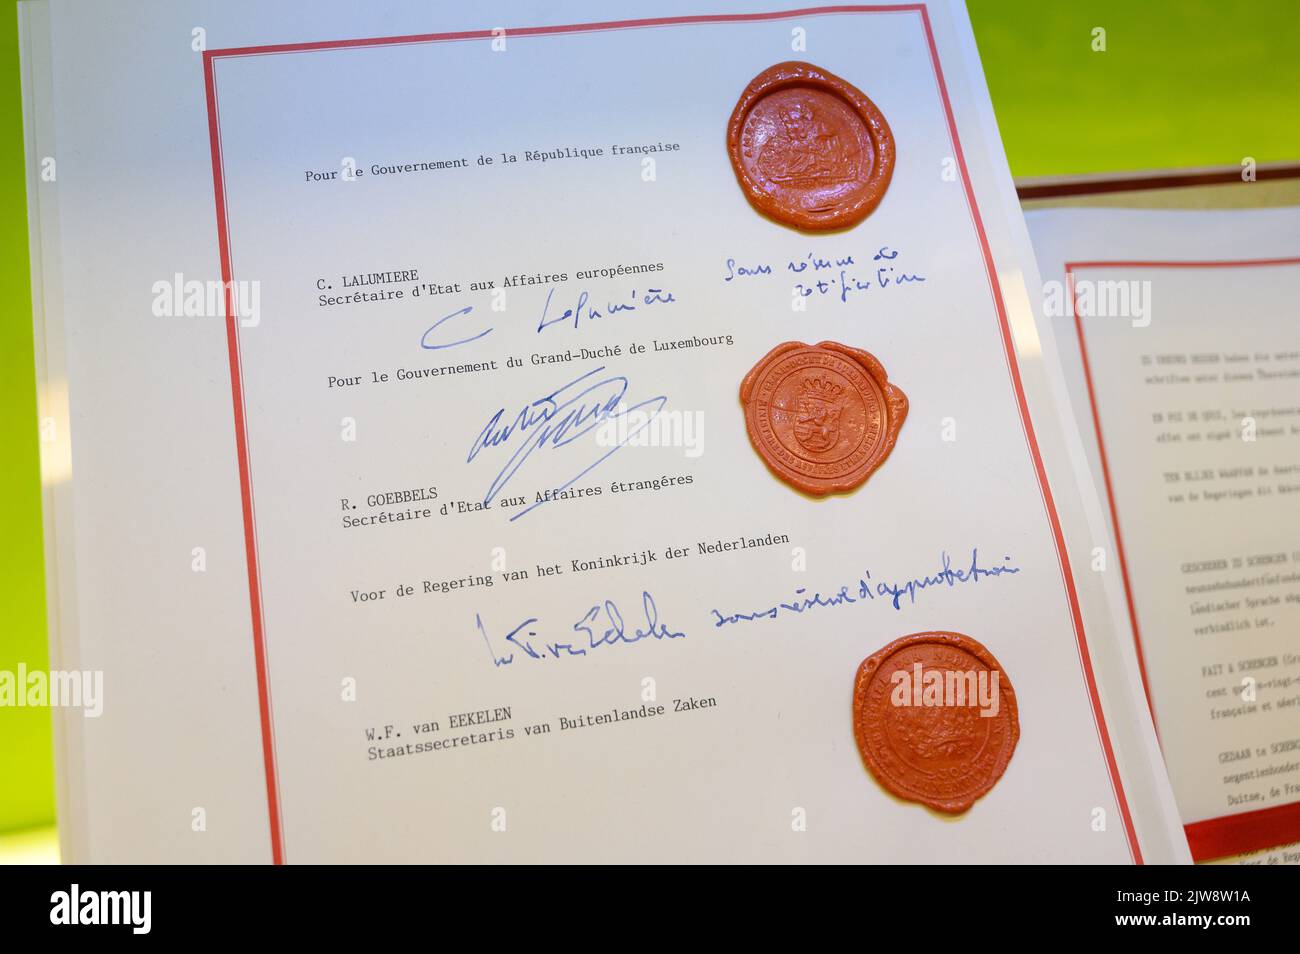 Das Schengen-Abkommen, das am 14. Juni 1985 von den Regierungen Frankreichs, Luxemburgs, der Niederlande, Belgiens und Deutschlands unterzeichnet wurde. Stockfoto